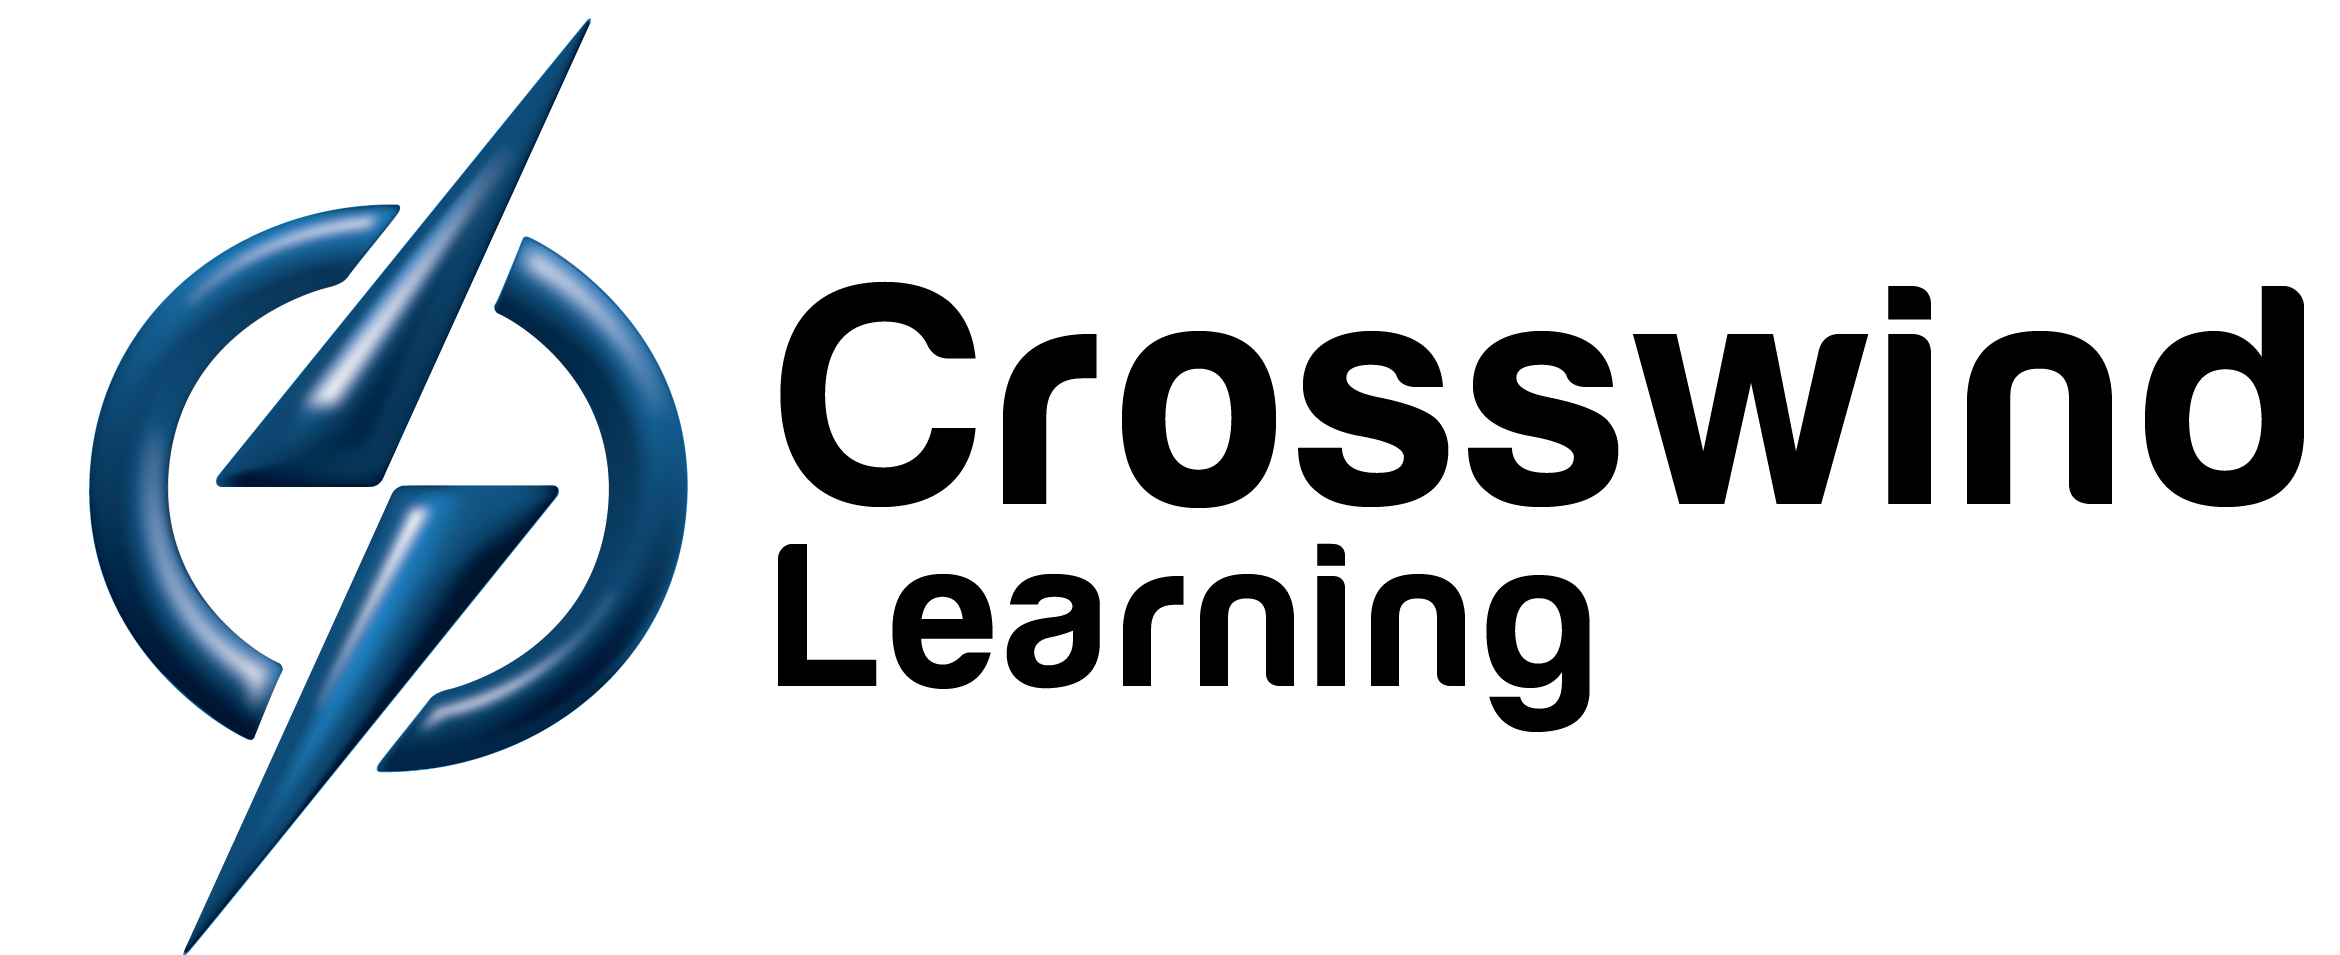 Crosswind-Learning-Logo-Final-blue.jpg